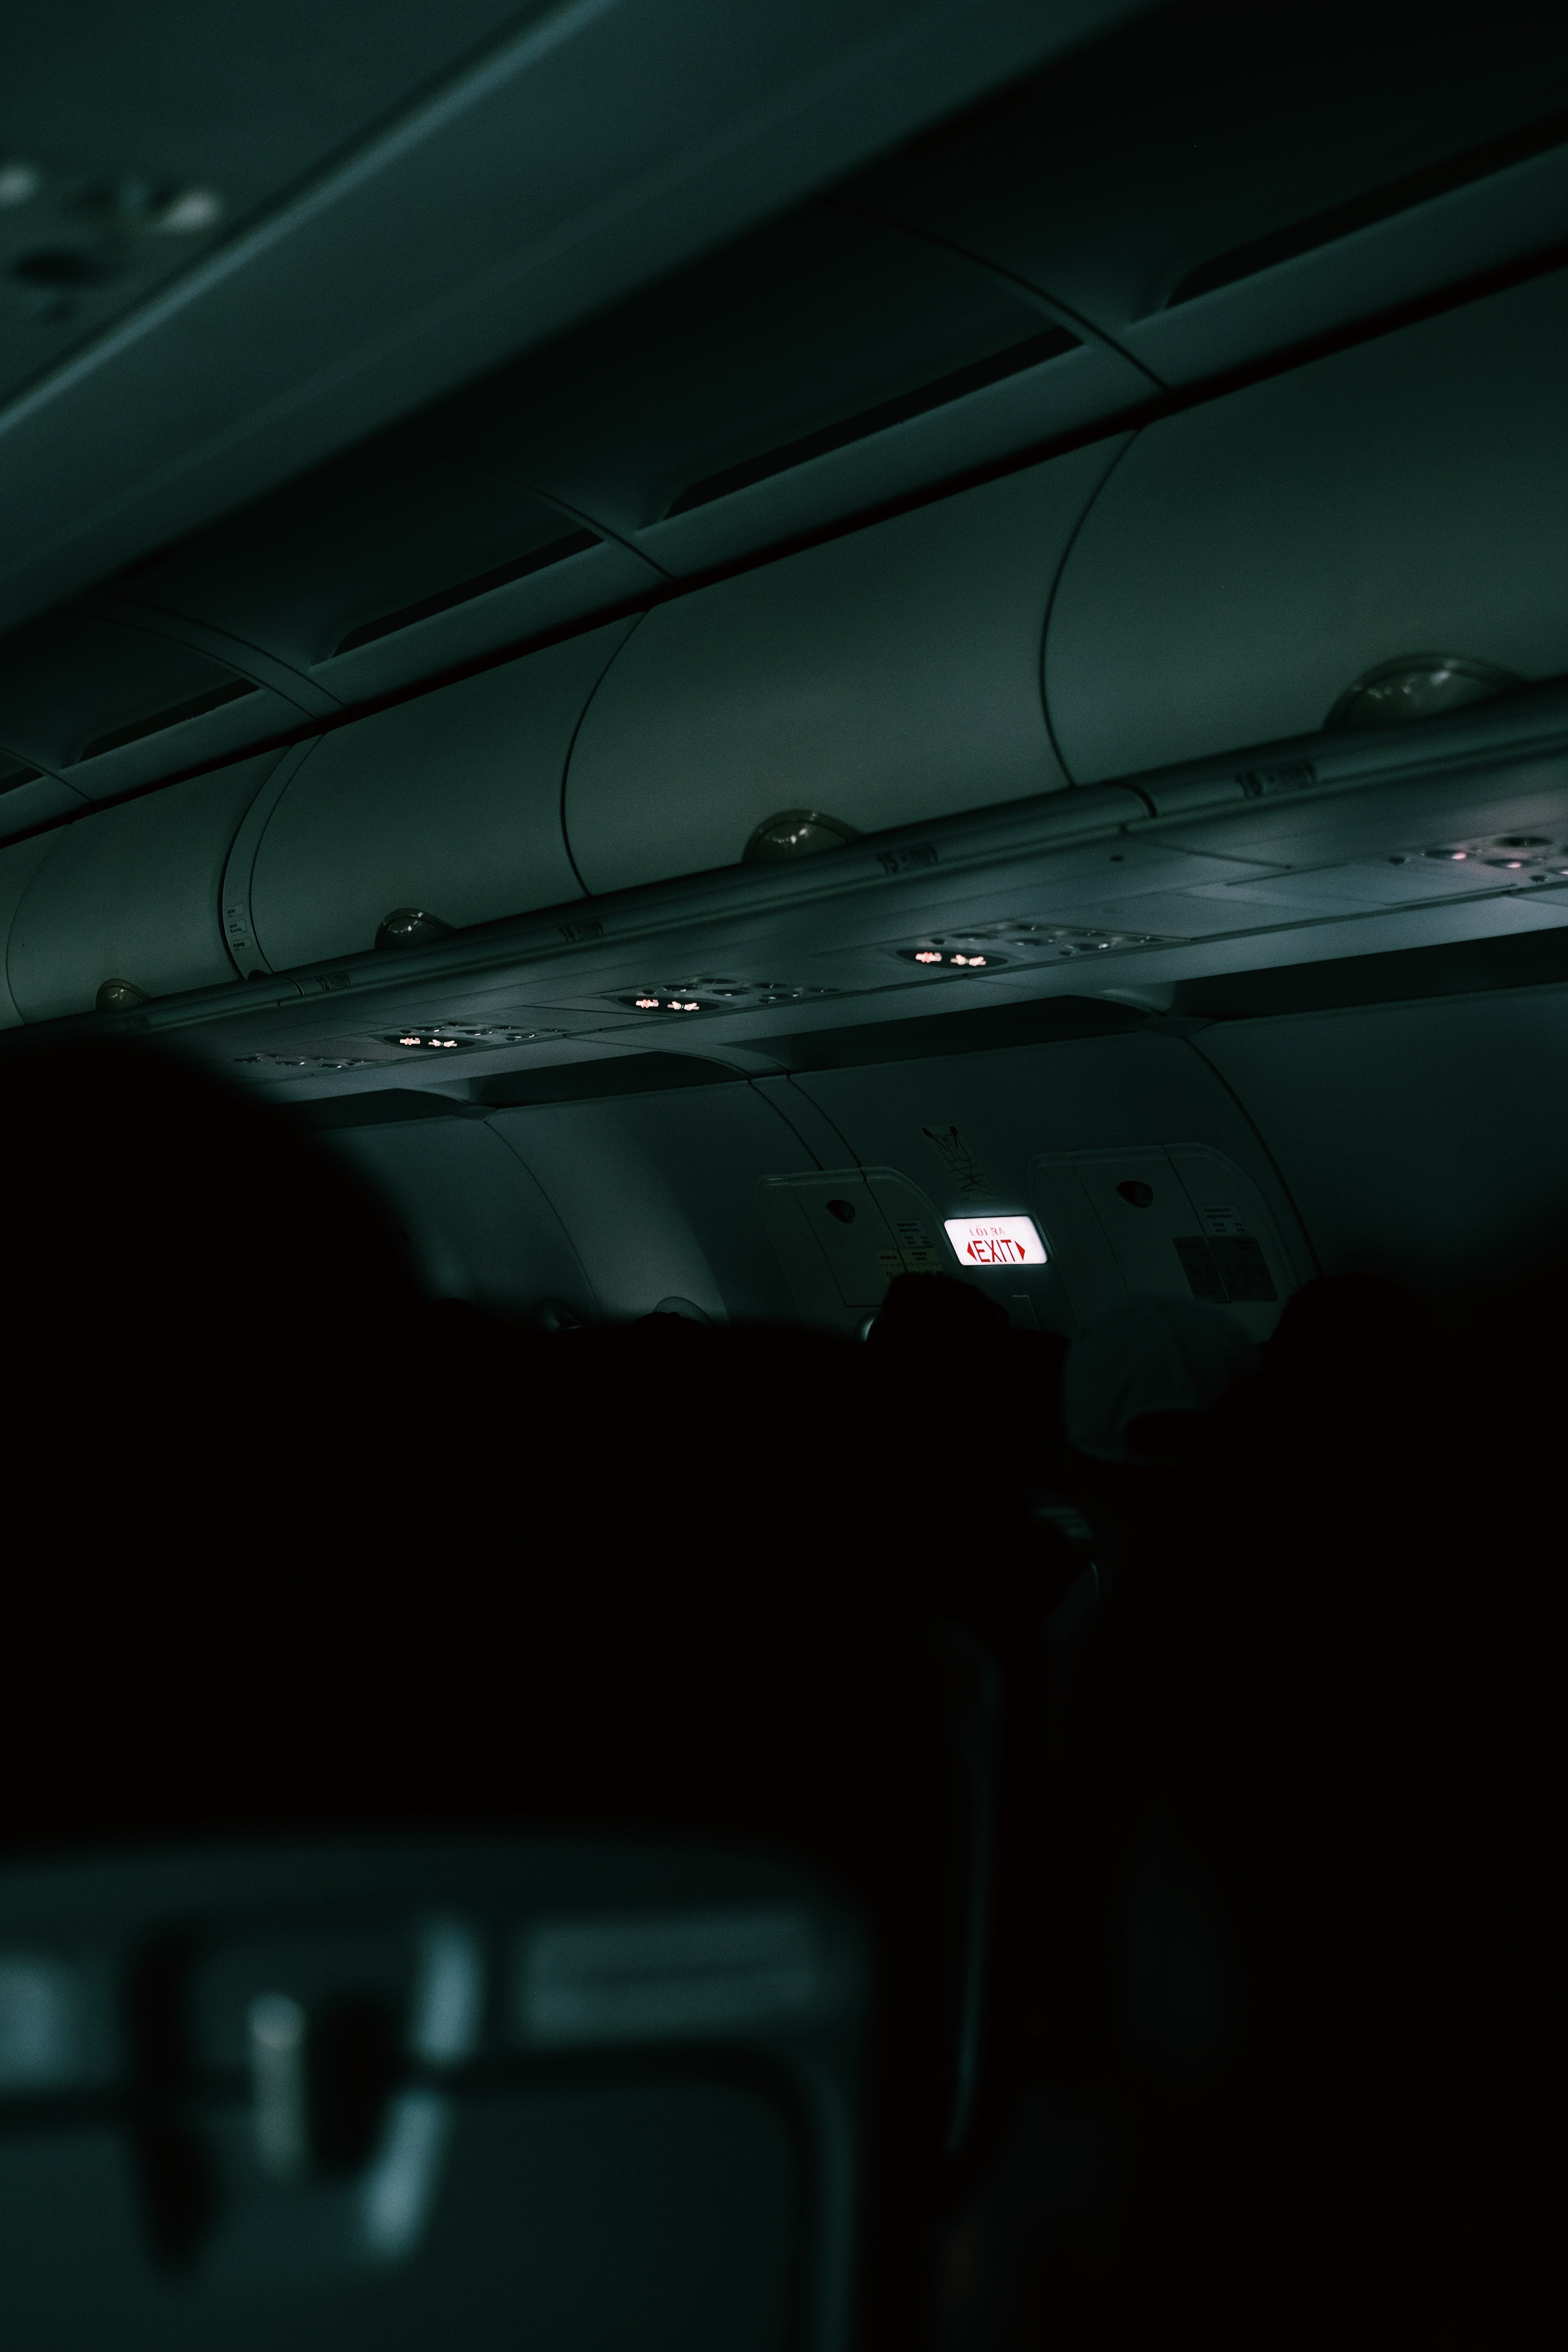  Flugzeug Hintergrundbild 4160x6240. Kostenloses Foto zum Thema: dunkel, fliegen, flug, flugzeug, innen, vertikaler schuss